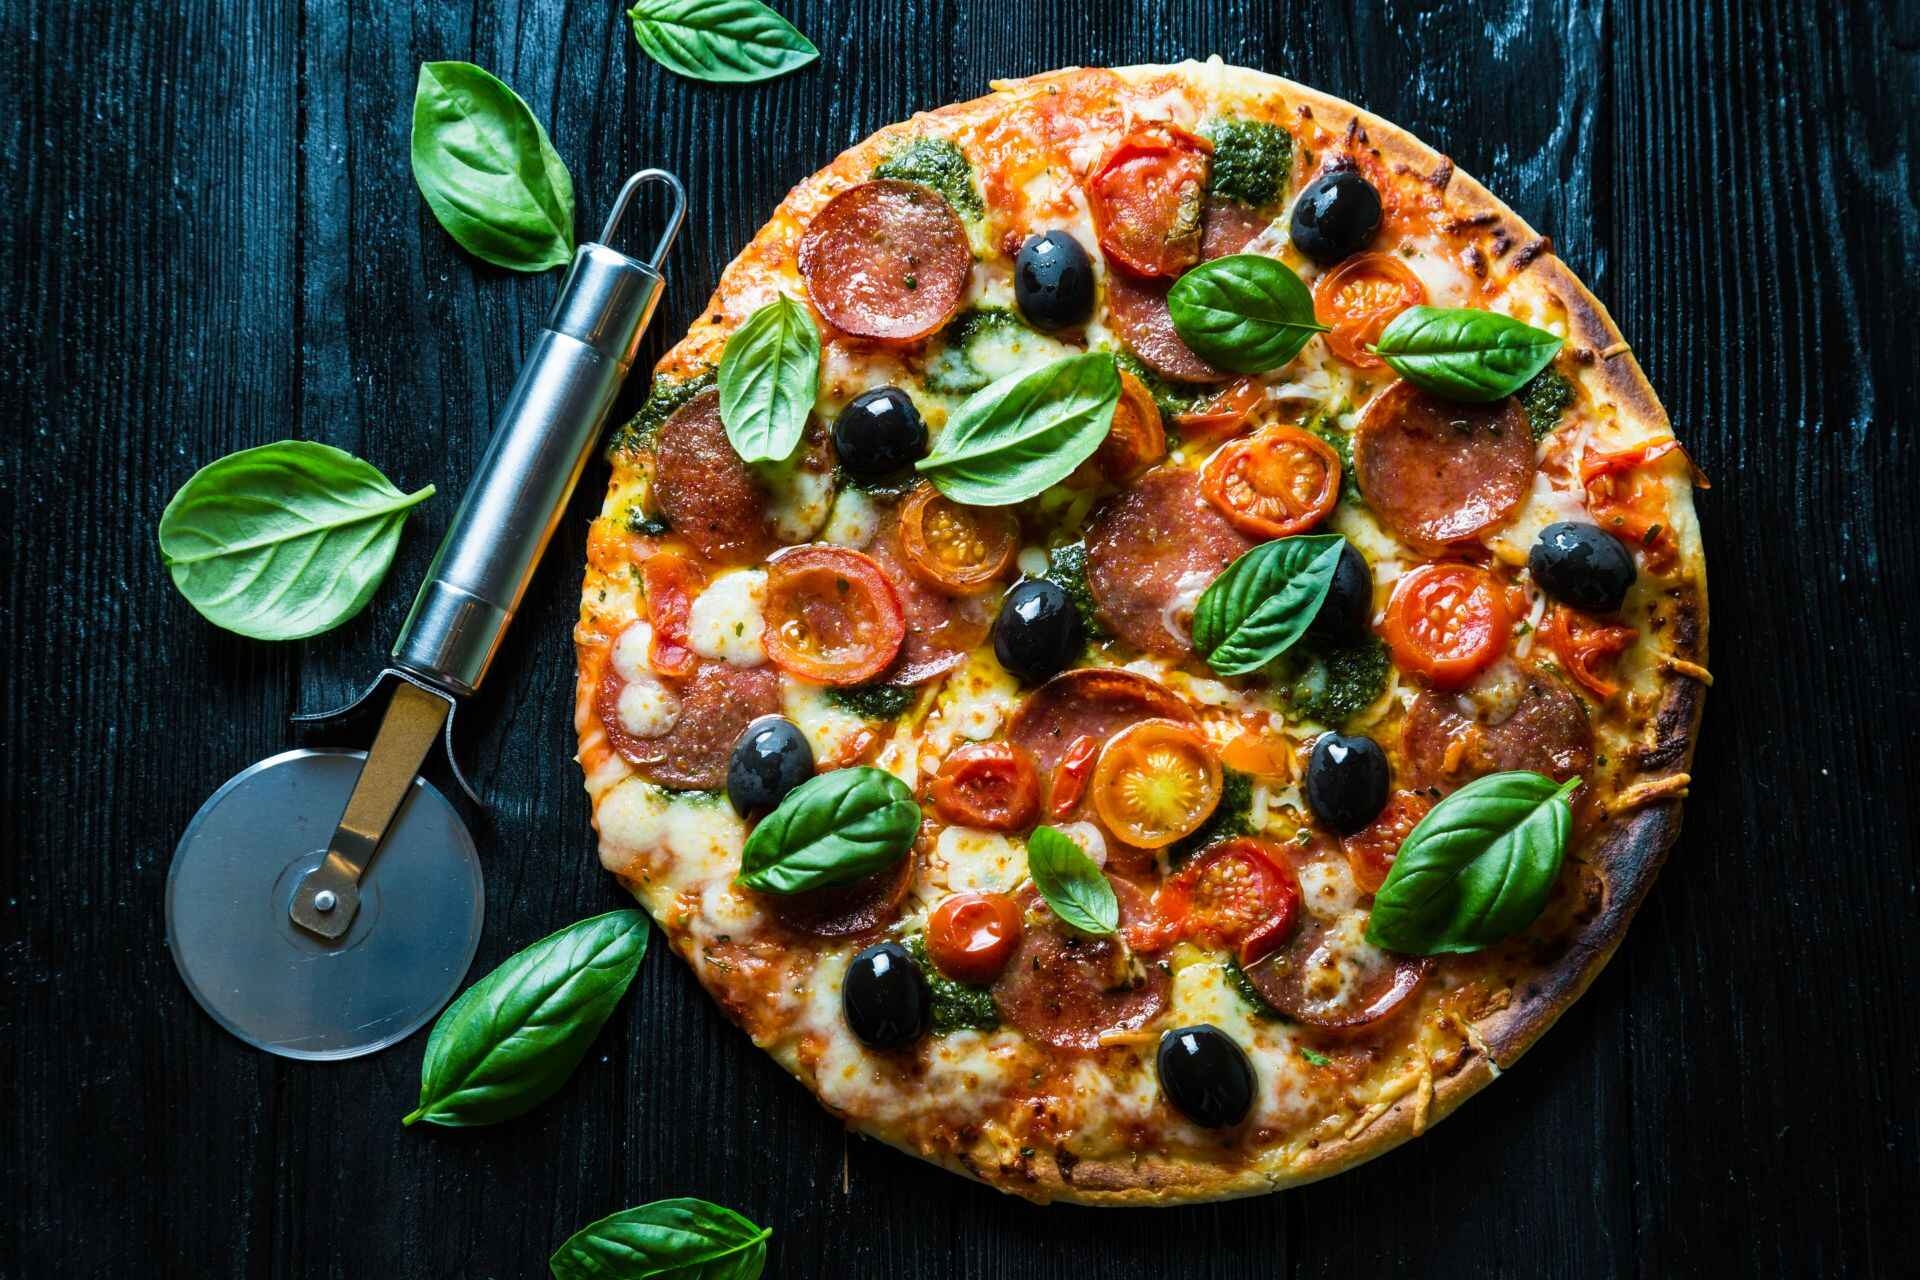 პიცა აღიარებულია, როგორც ერთ-ერთი ყველაზე ჯანსაღი და სიმსივნის საწინააღმდეგო საკვები